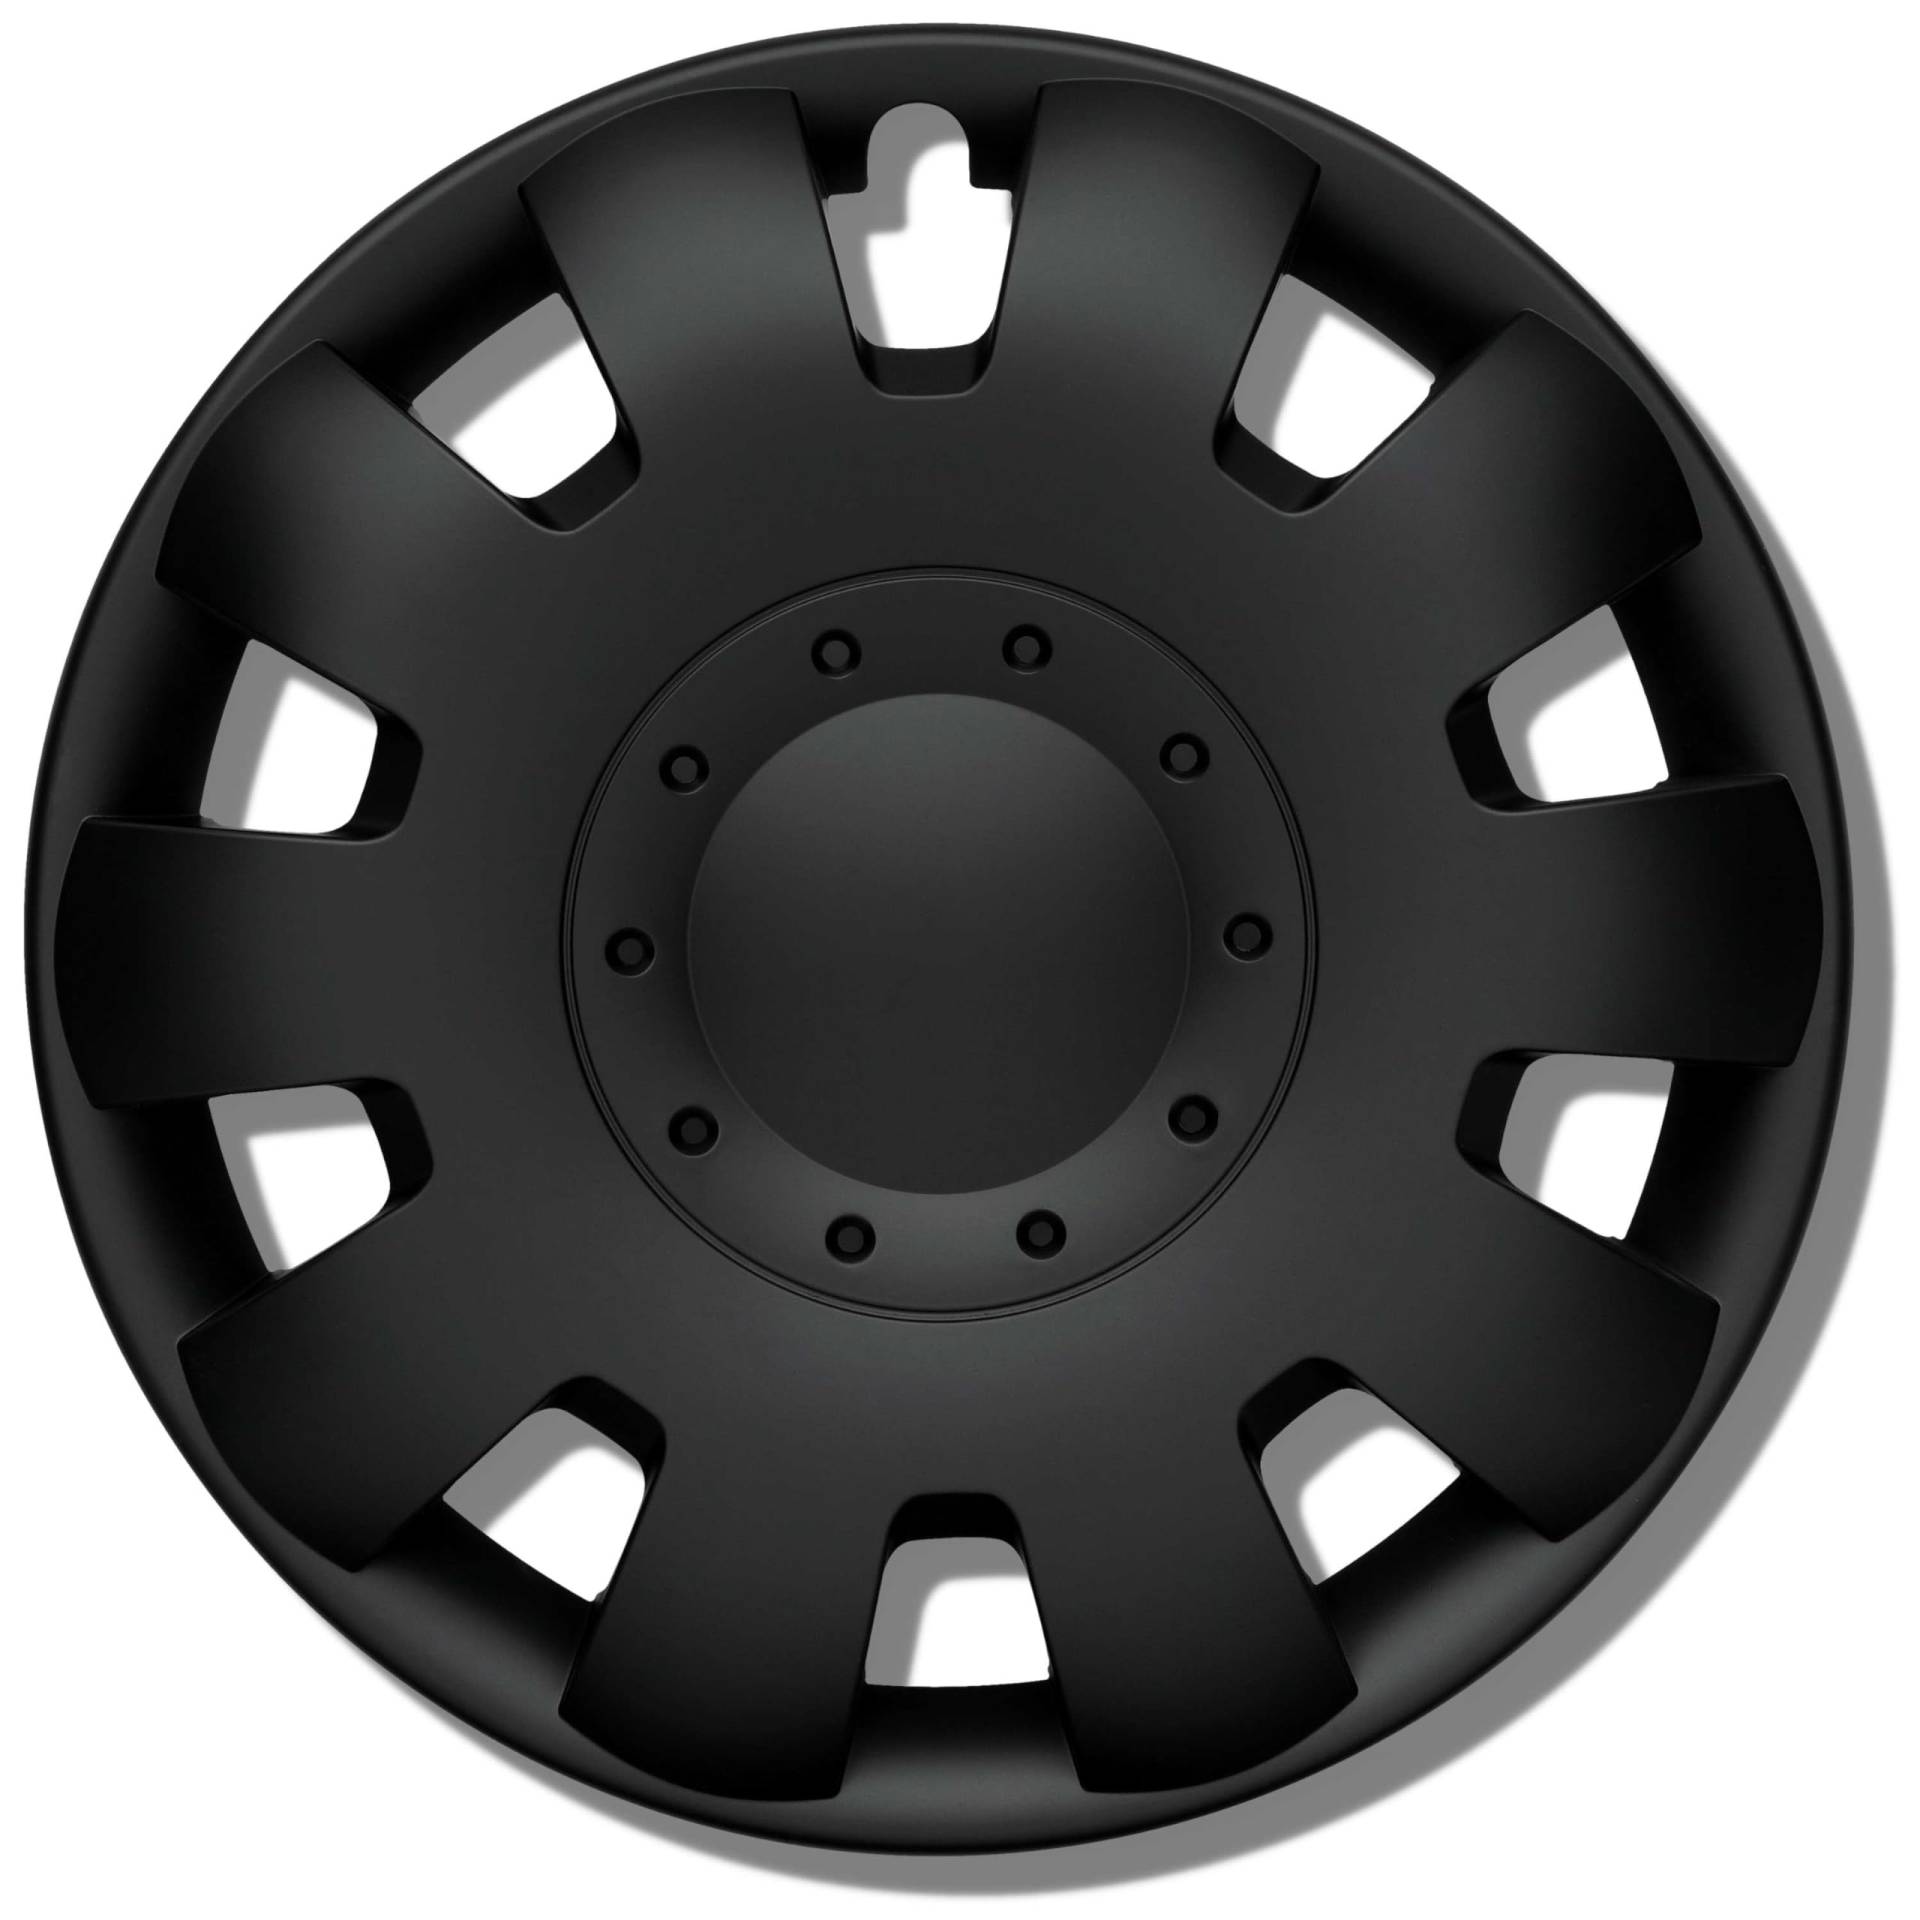 Radkappen 16 Zoll schwarz matt Erstausrüster Qualität aus robustem Kunststoff Neptun 4 Stück Radzierblenden für Stahlräder - Radblenden 4er Set für Stahlfelgen - Europäische Produktion von Kuglo